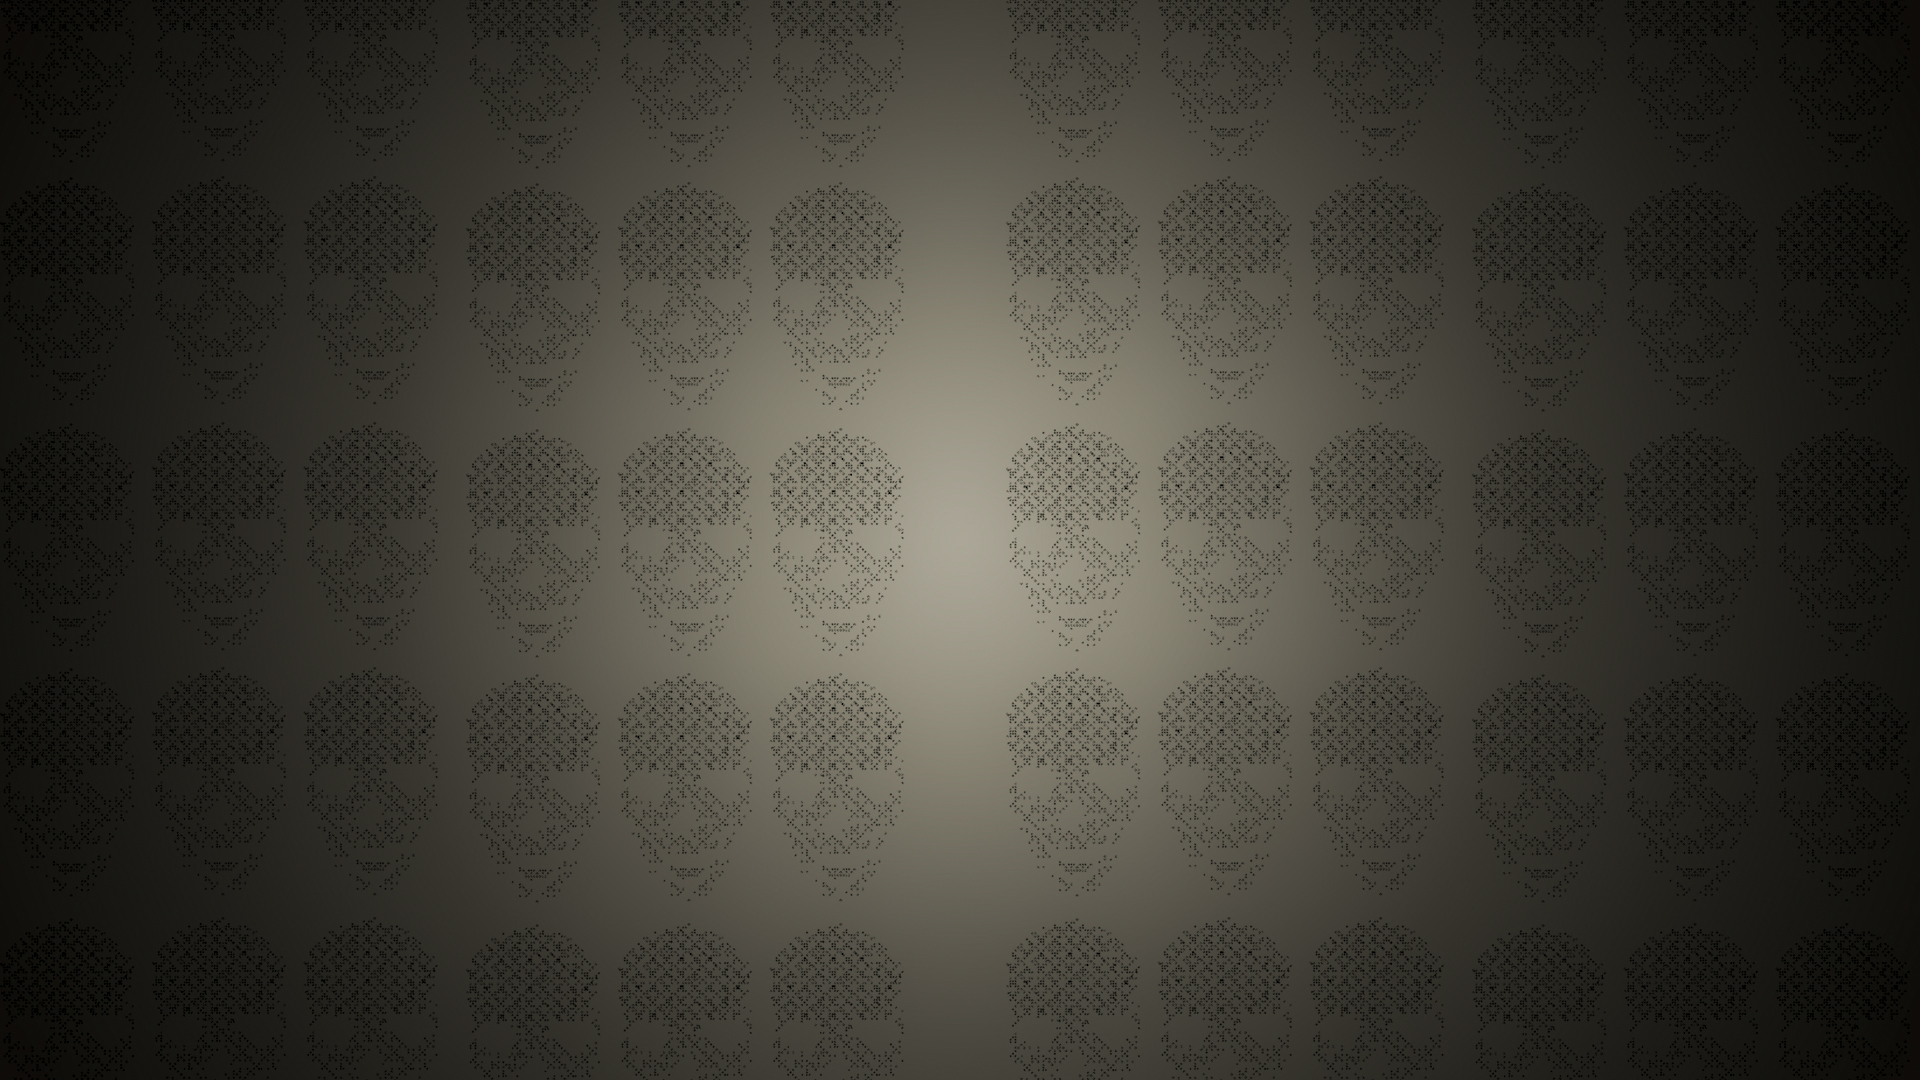 General 1920x1080 skull texture minimalism pattern